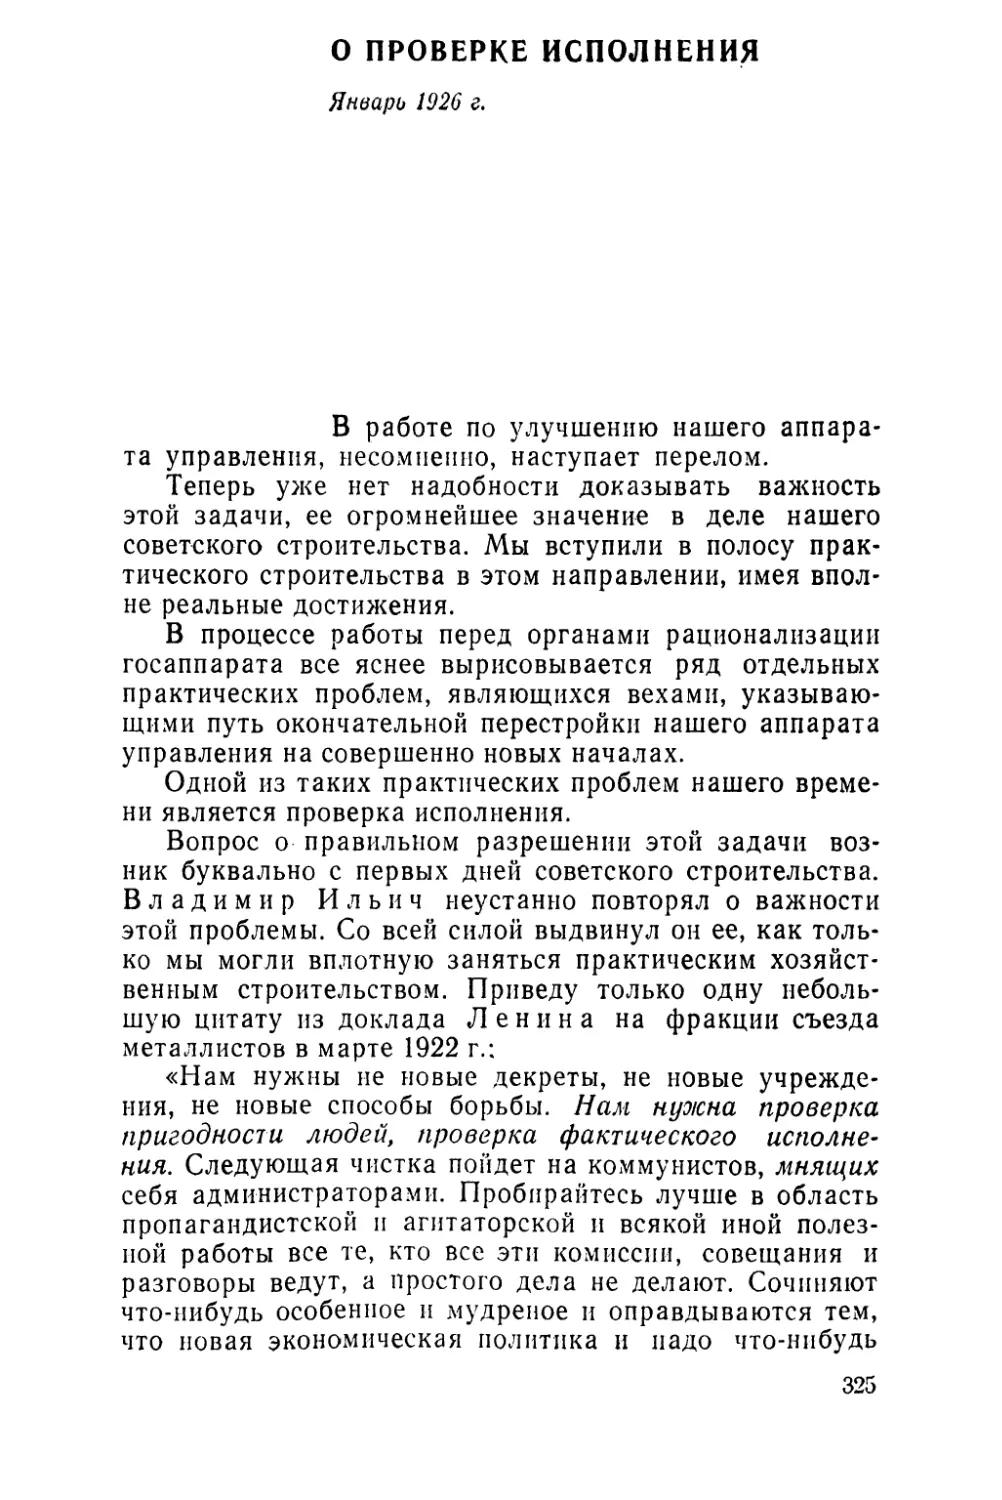 О ПРОВЕРКЕ ИСПОЛНЕНИЯ. Январь 1926 г.